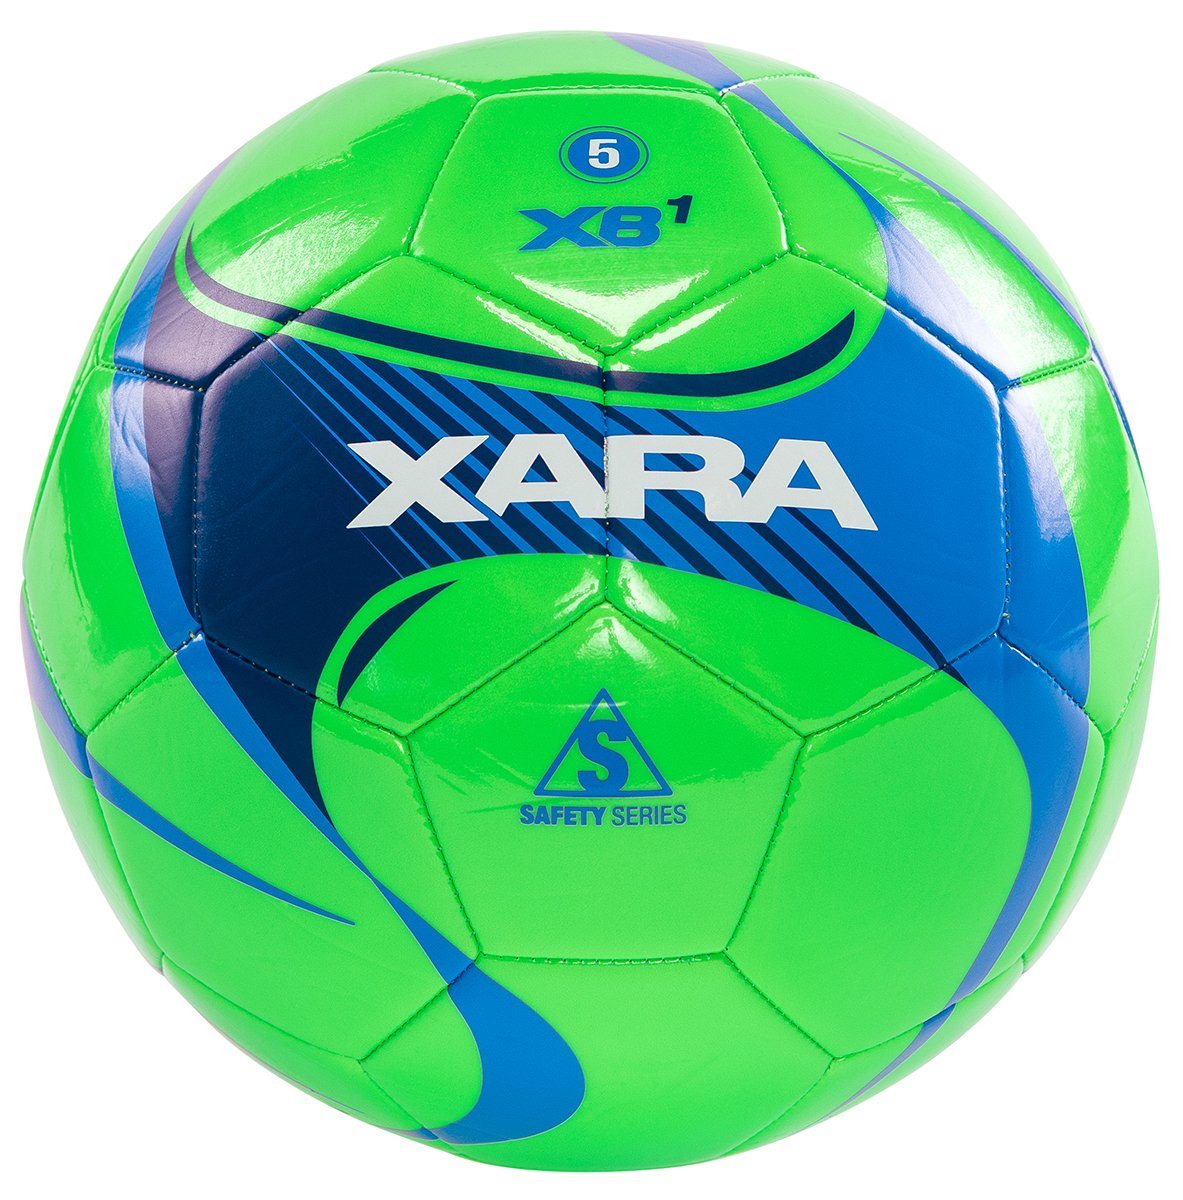 Xara XB1 V5 Soccer Ball | 8051 Soccer Ball Xara 3 Fluro Green/Royal 